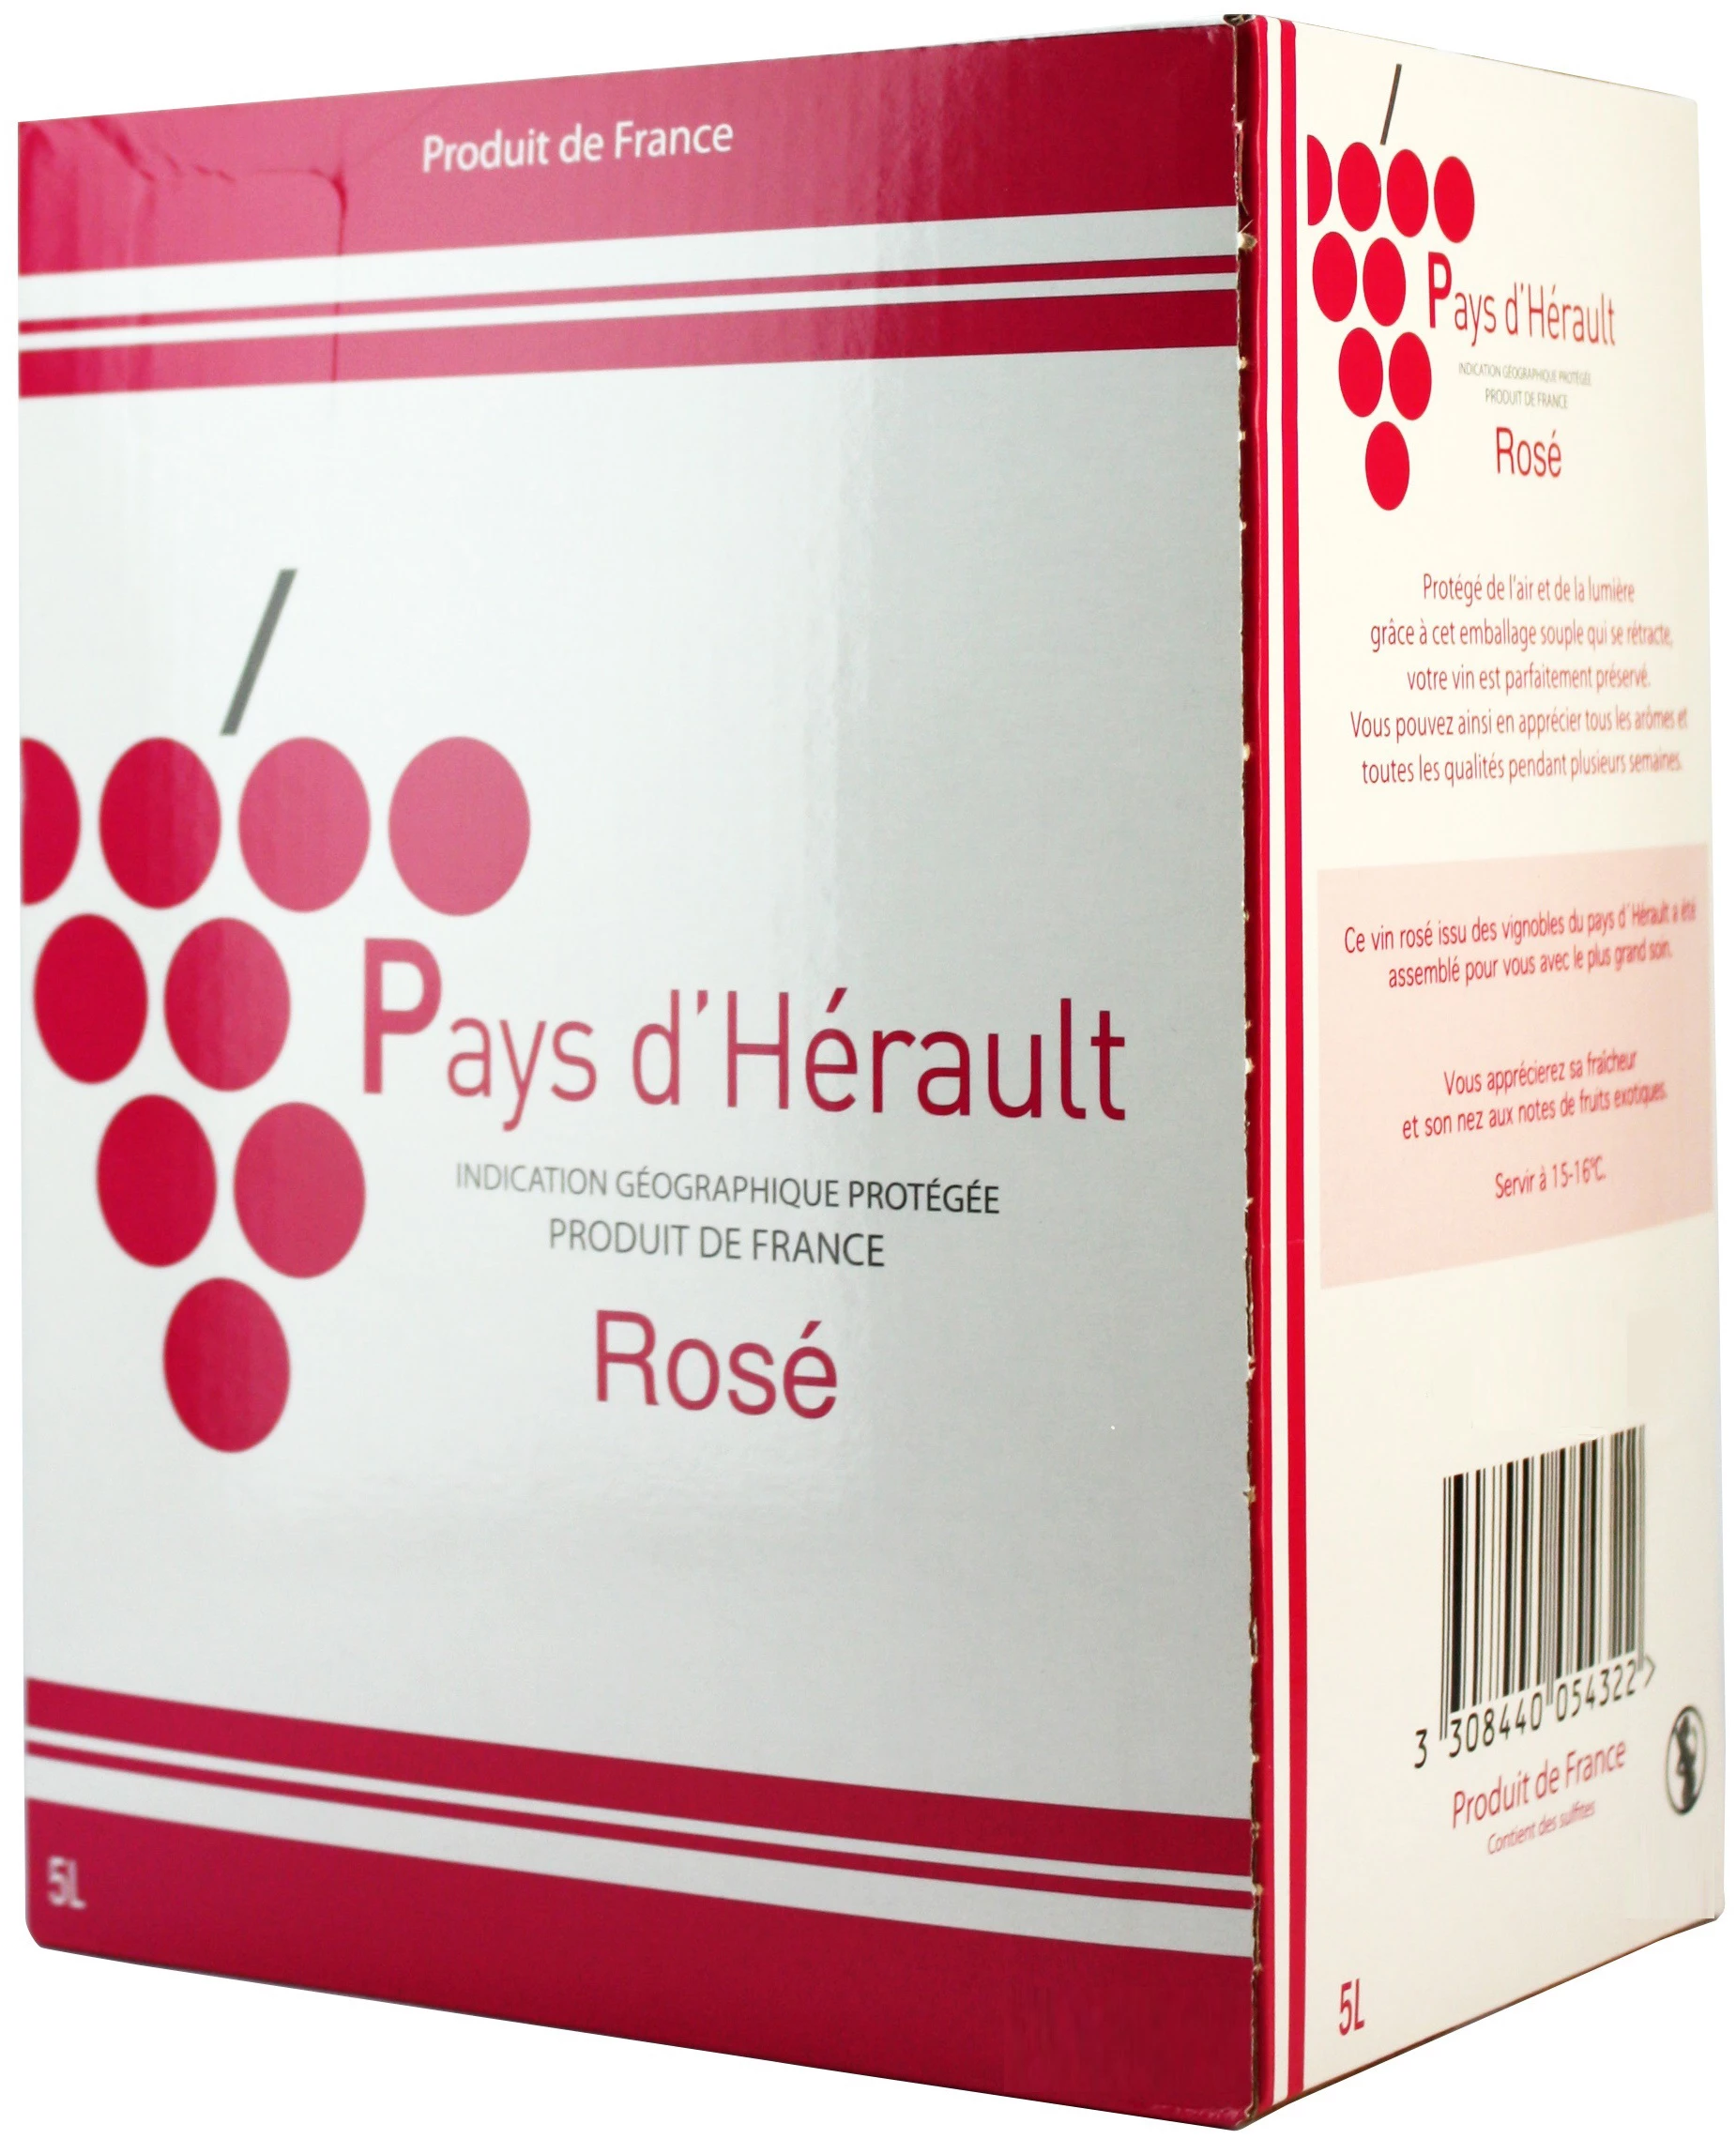 Vino rosato Pays d'Hérault Bib 5l